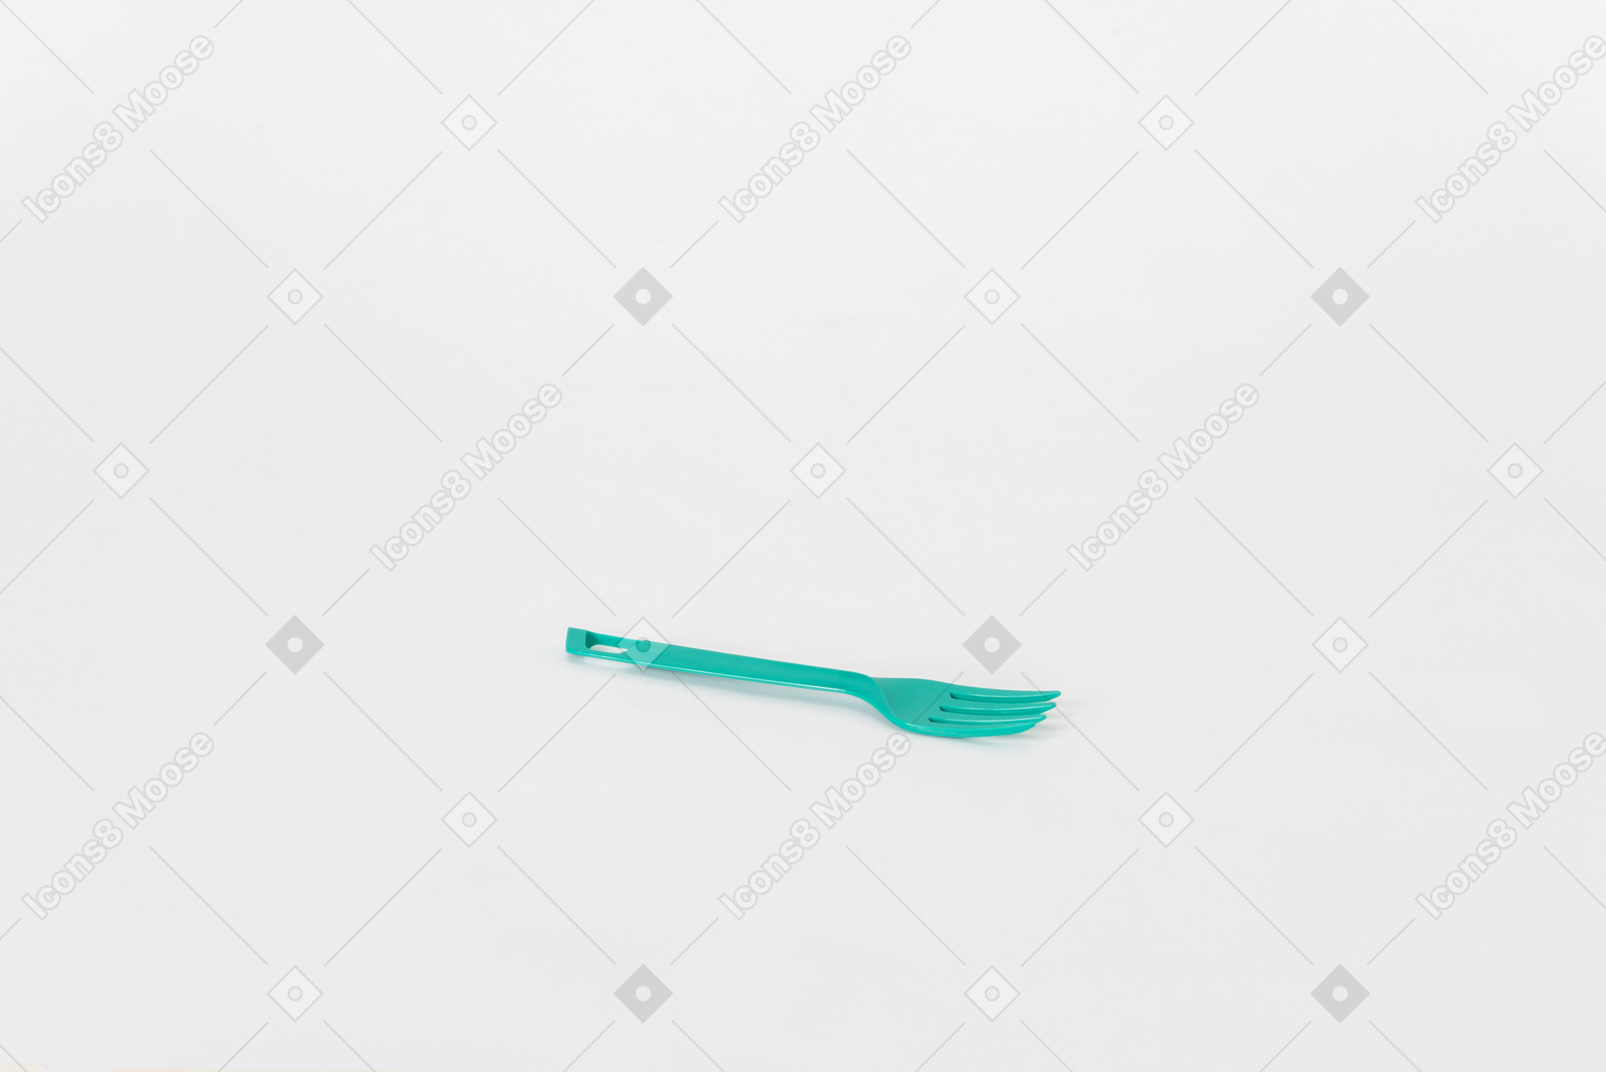 Tenedor de plástico verde sobre un fondo blanco.